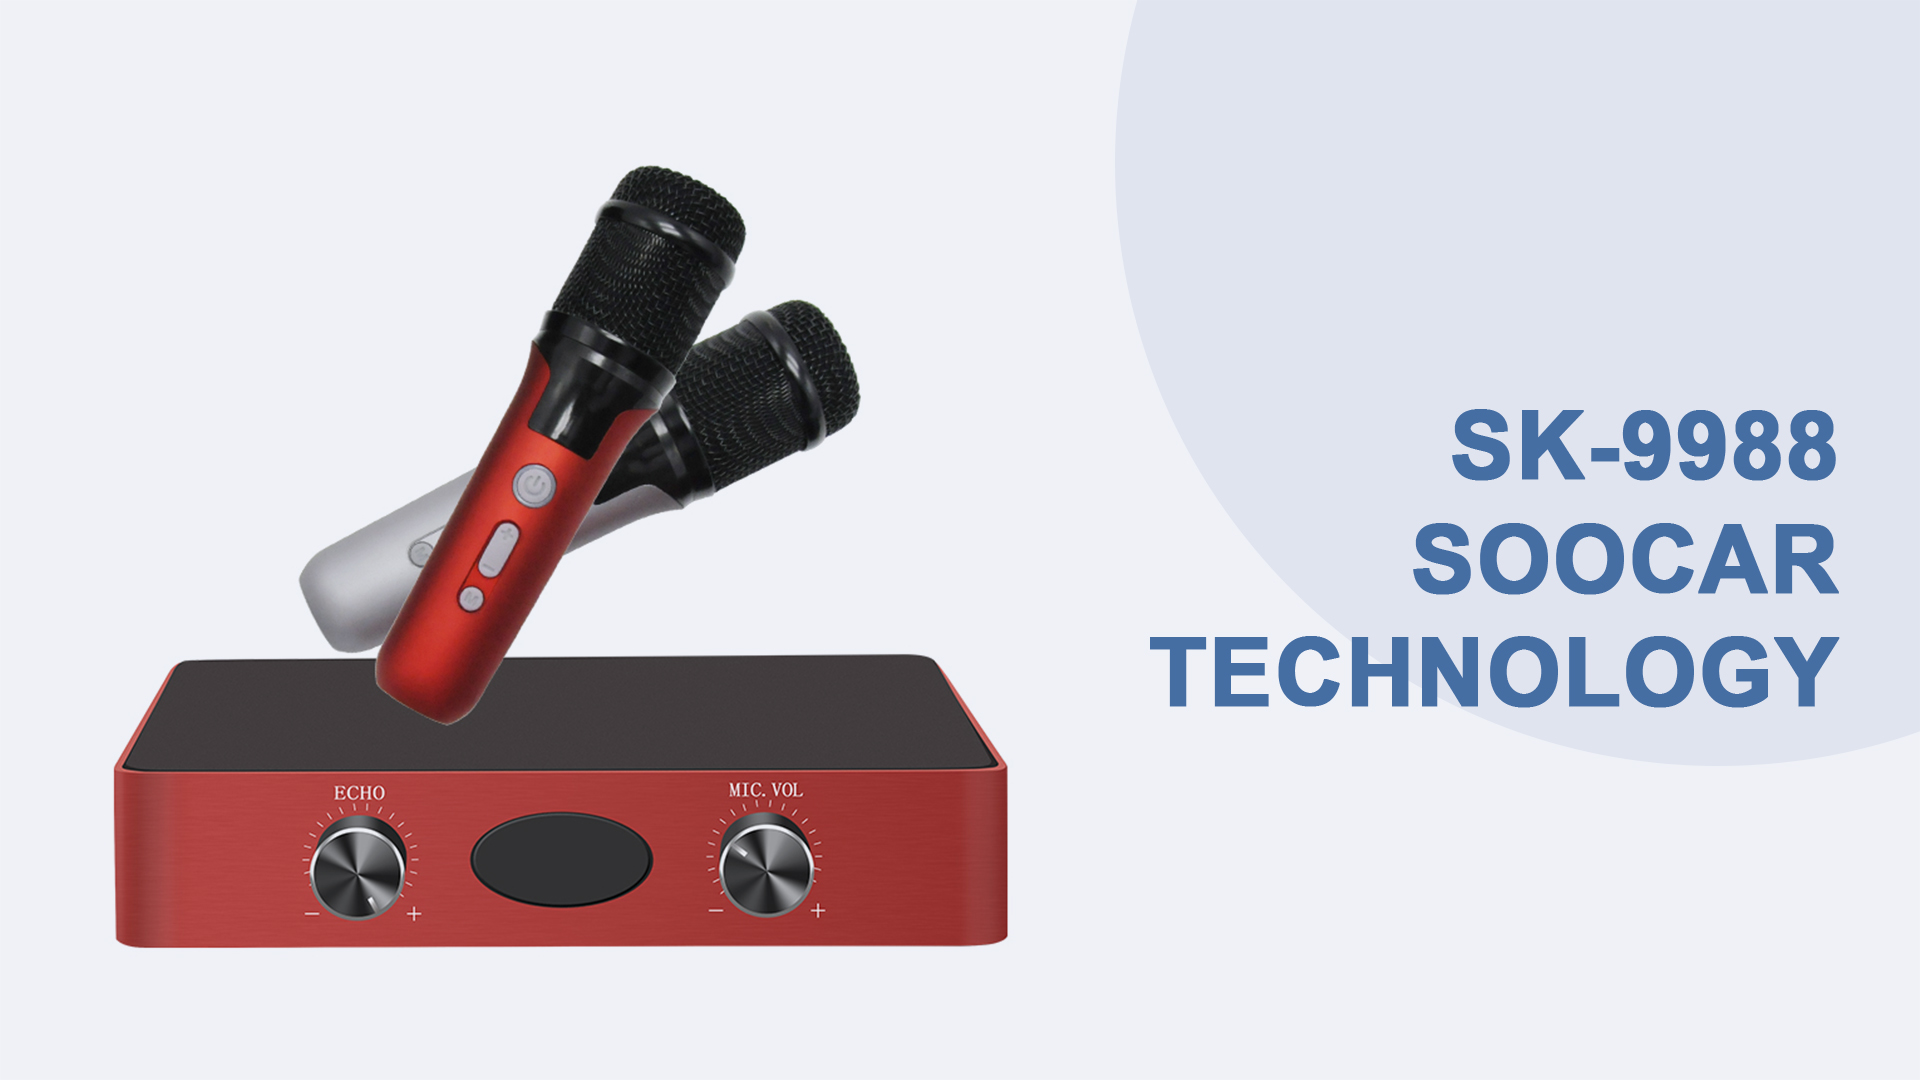 Kotak sistem karaoke mudah alih teknologi Soocar diperbuat daripada aloi aluminium sk-9988